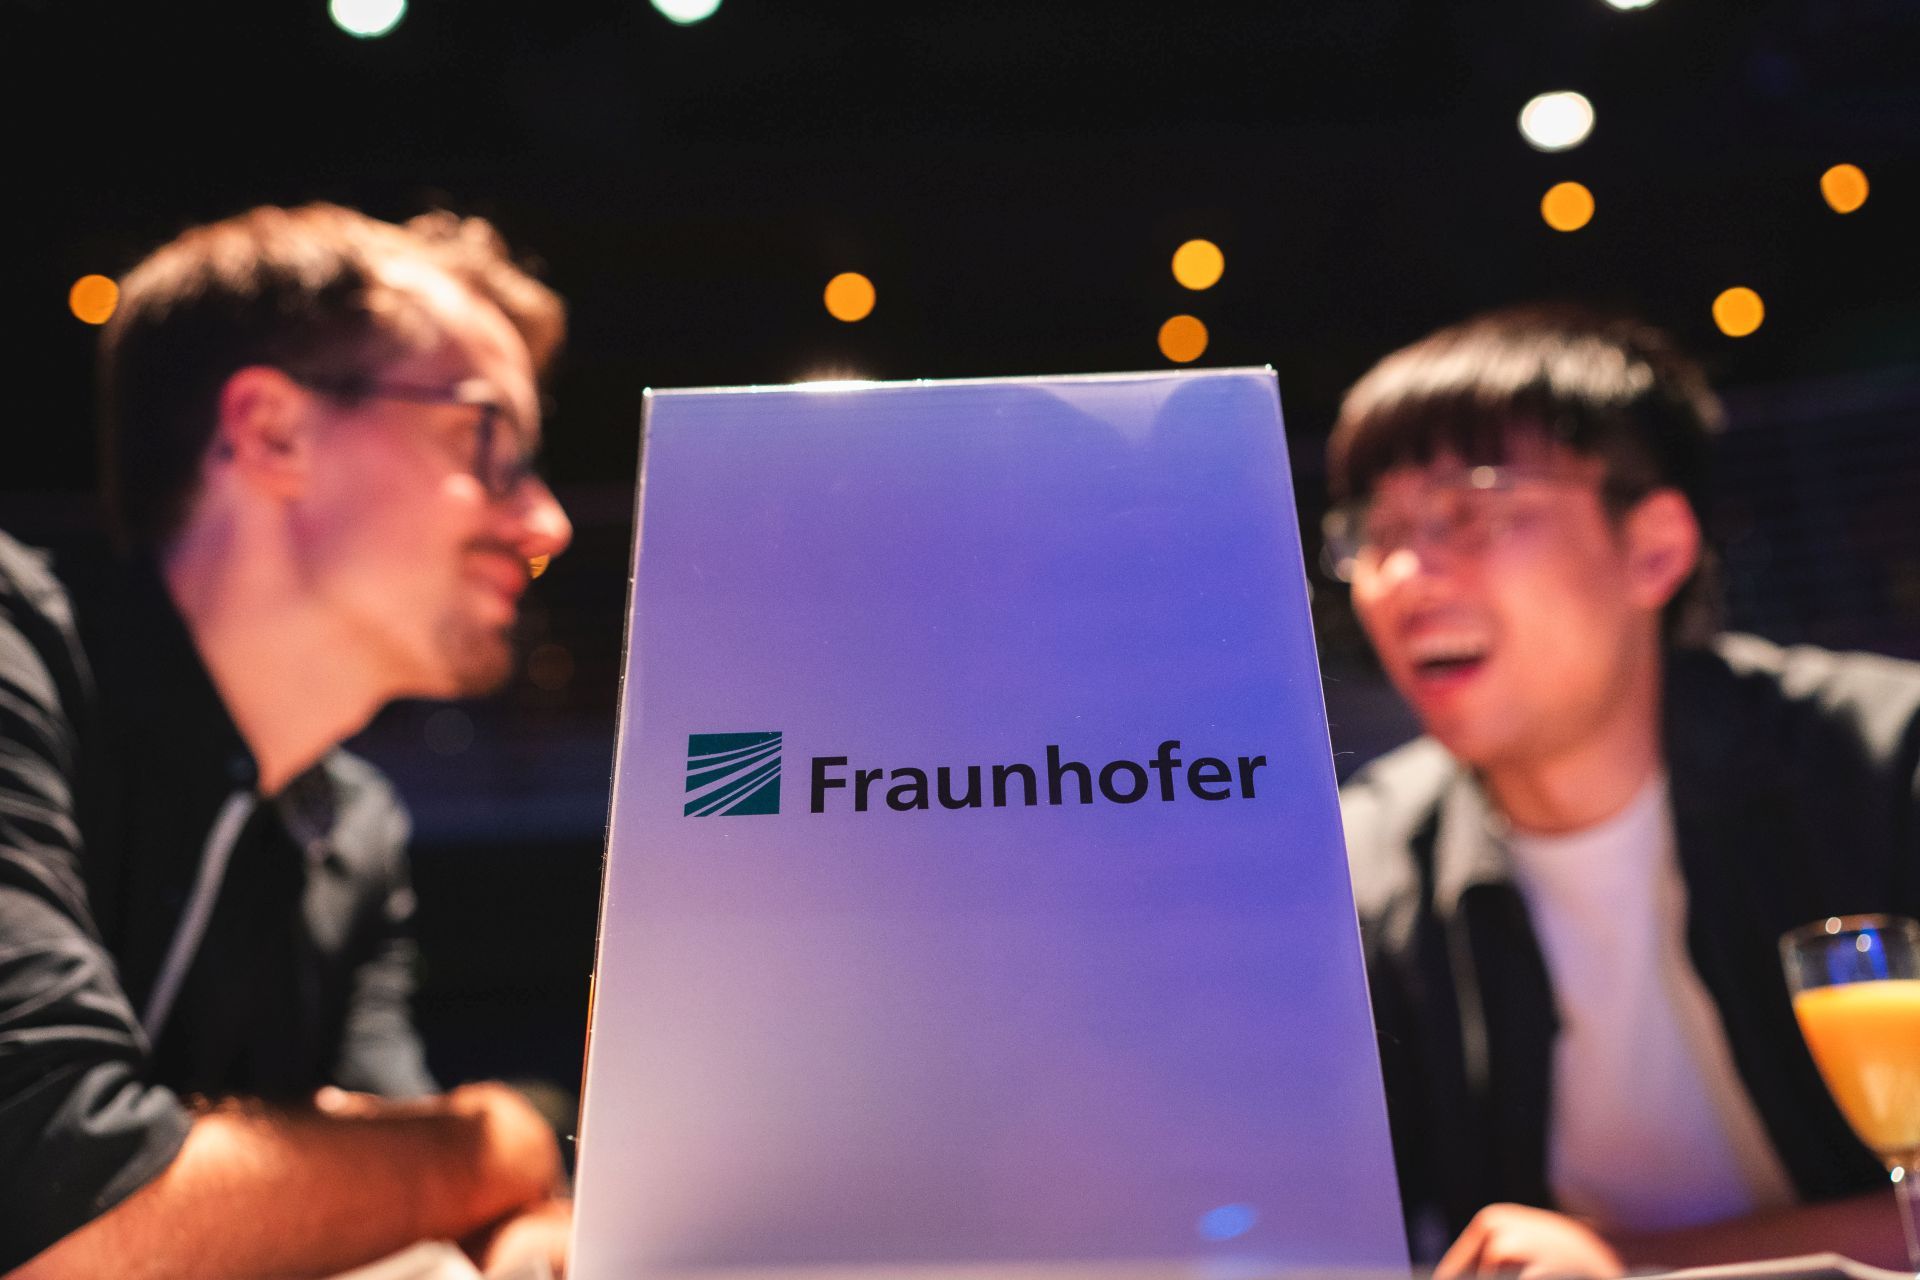 Zwei Menschen unterhalten sich und lachen im Hintergrund. Davor steht ein Schild mit "Fraunhofer".